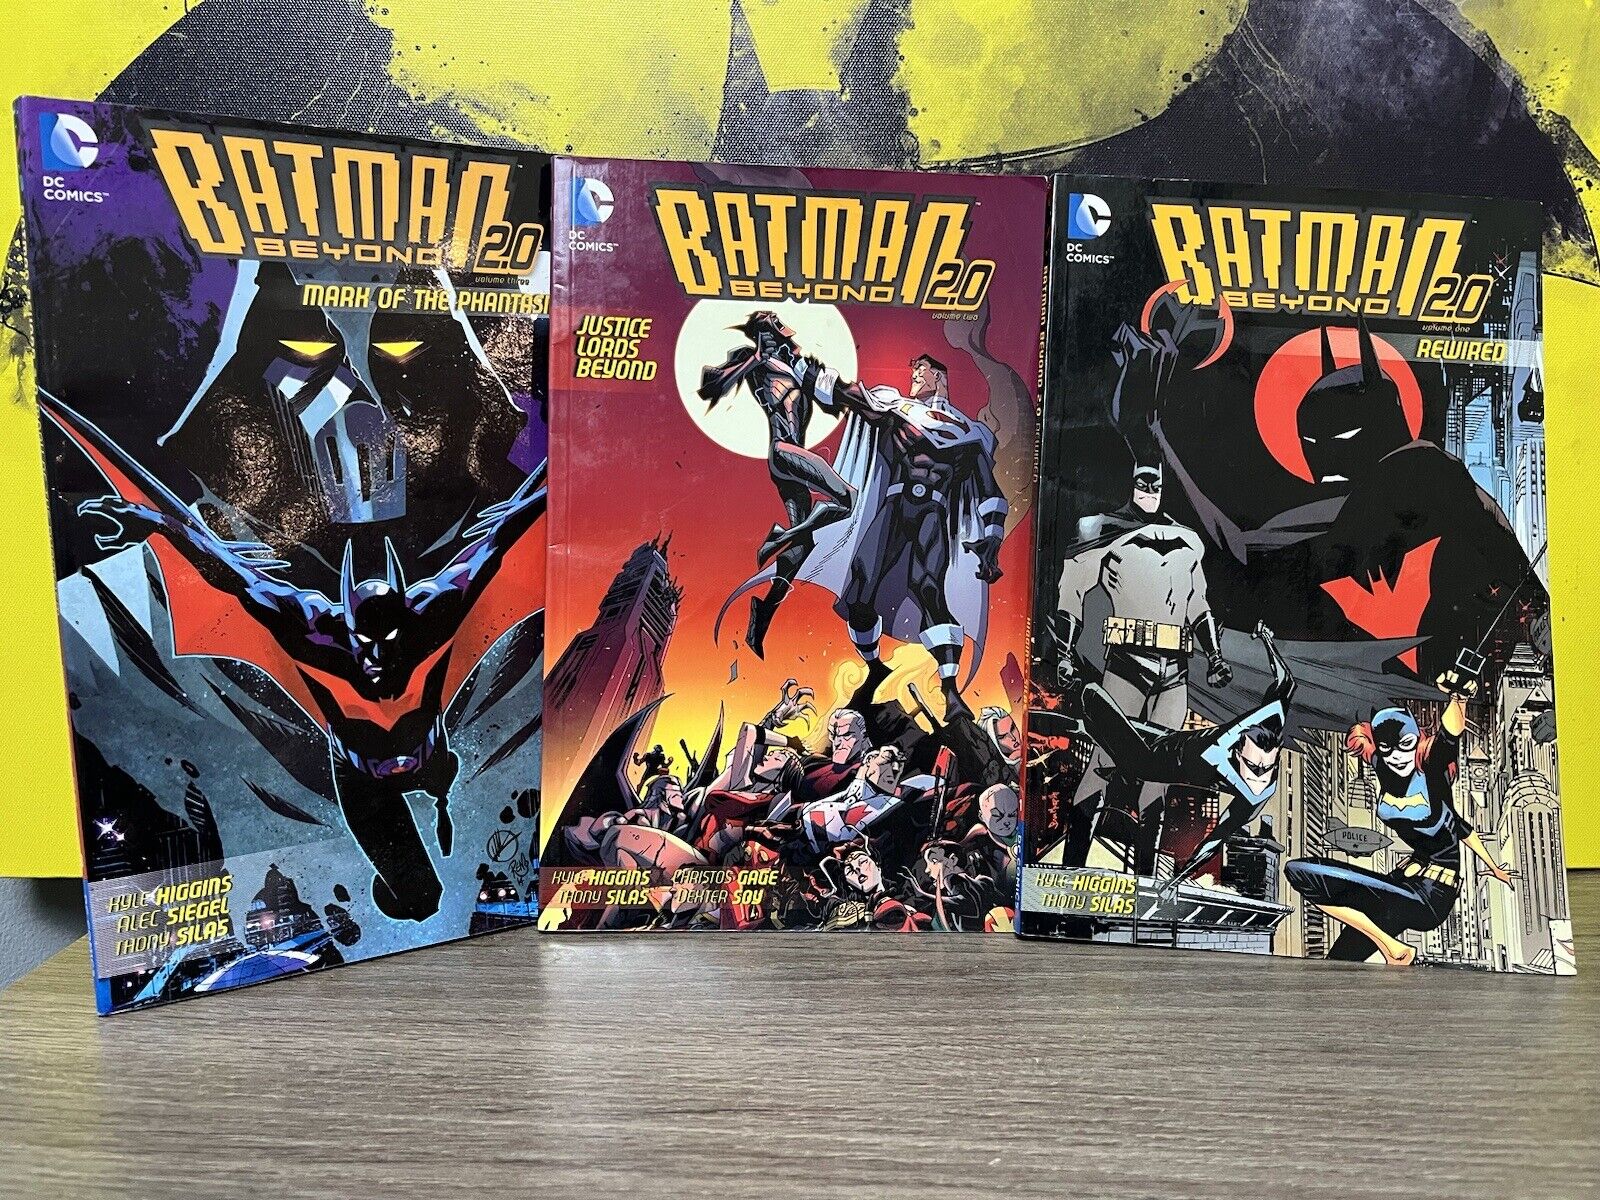 Batman Beyond 2.0 Vol 1-3 Paperback